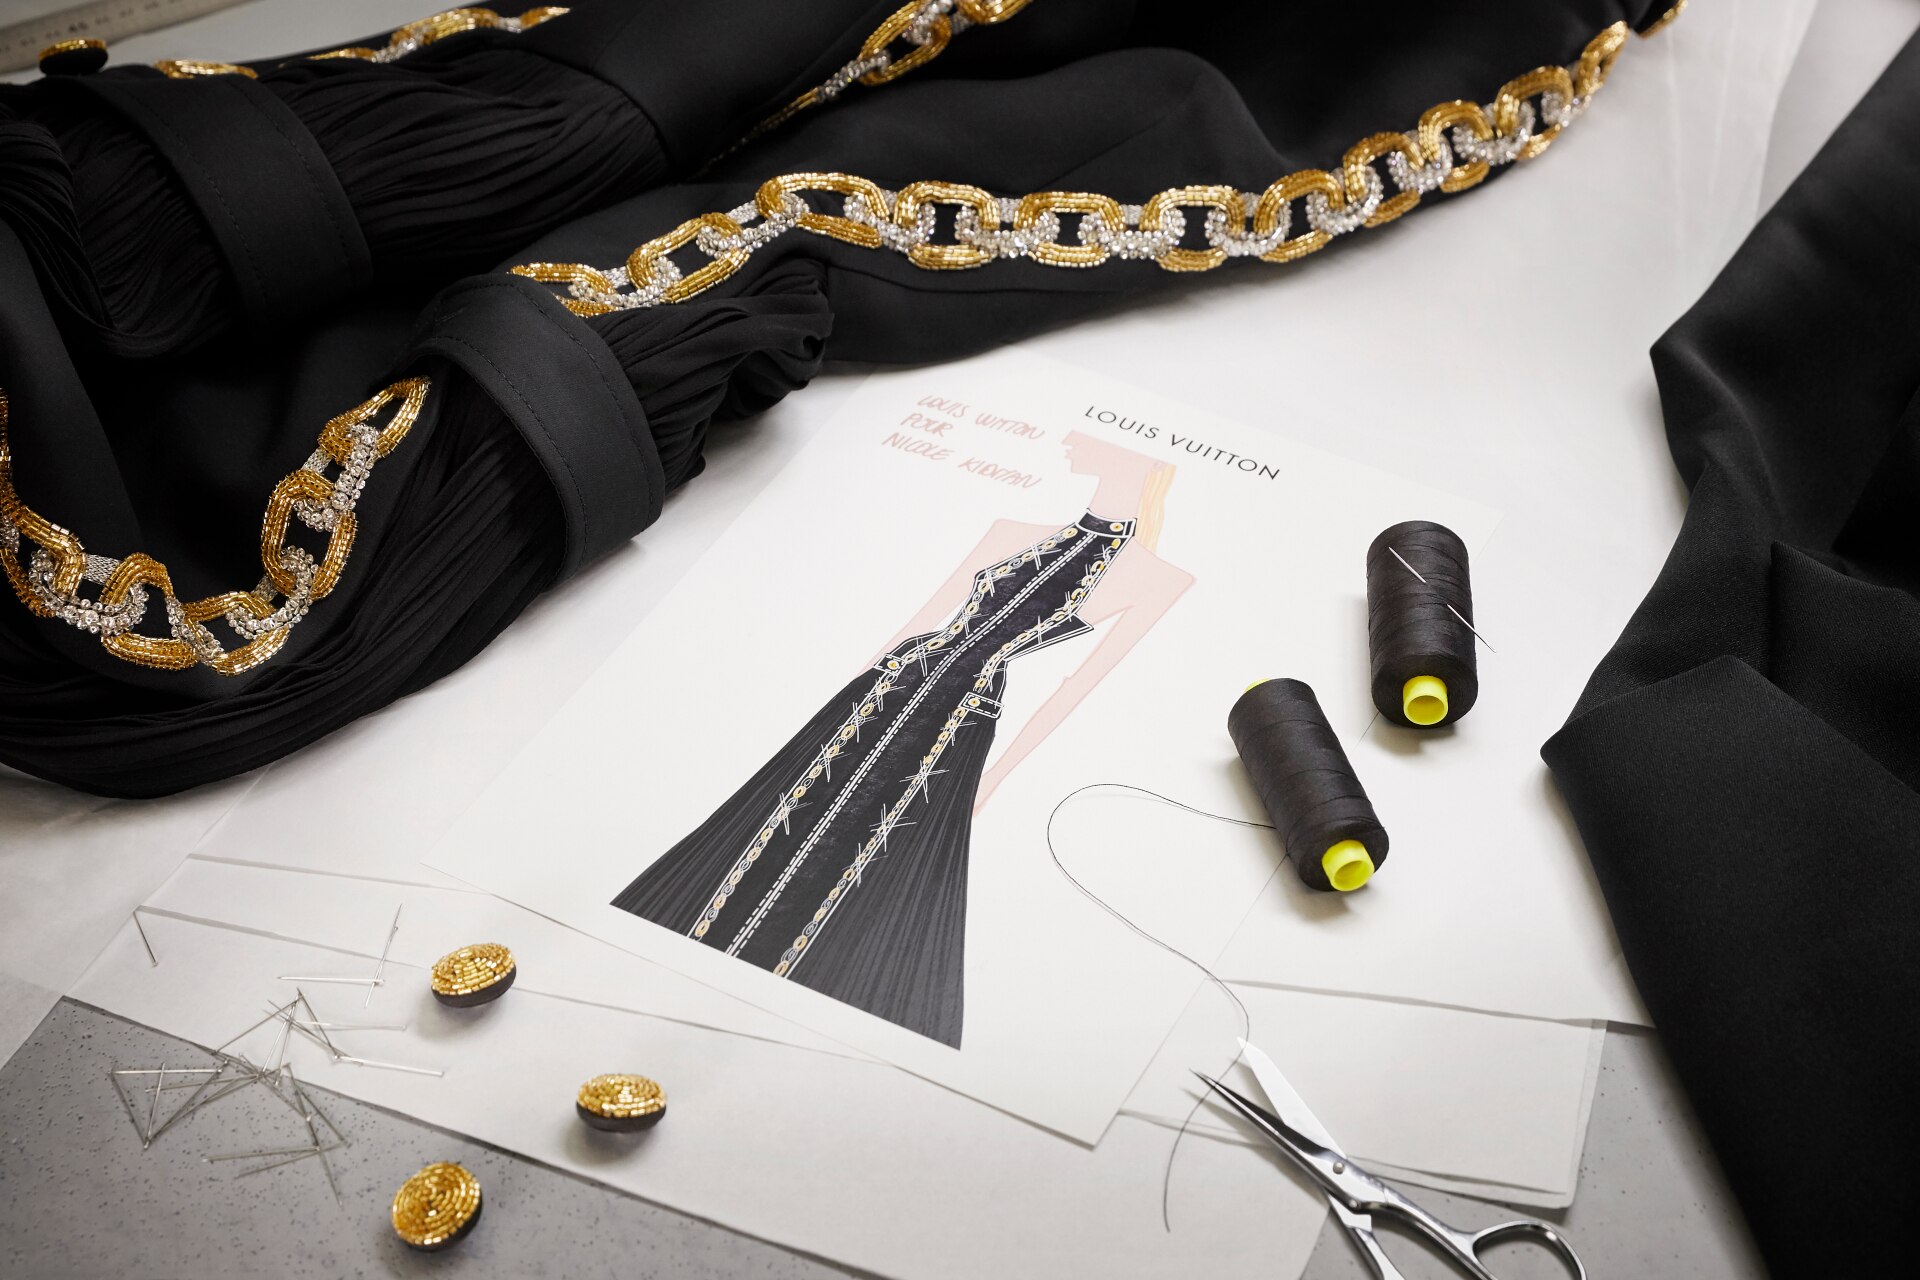 Vuitton - nicole kidman louis vuitton wardrobe malfunction